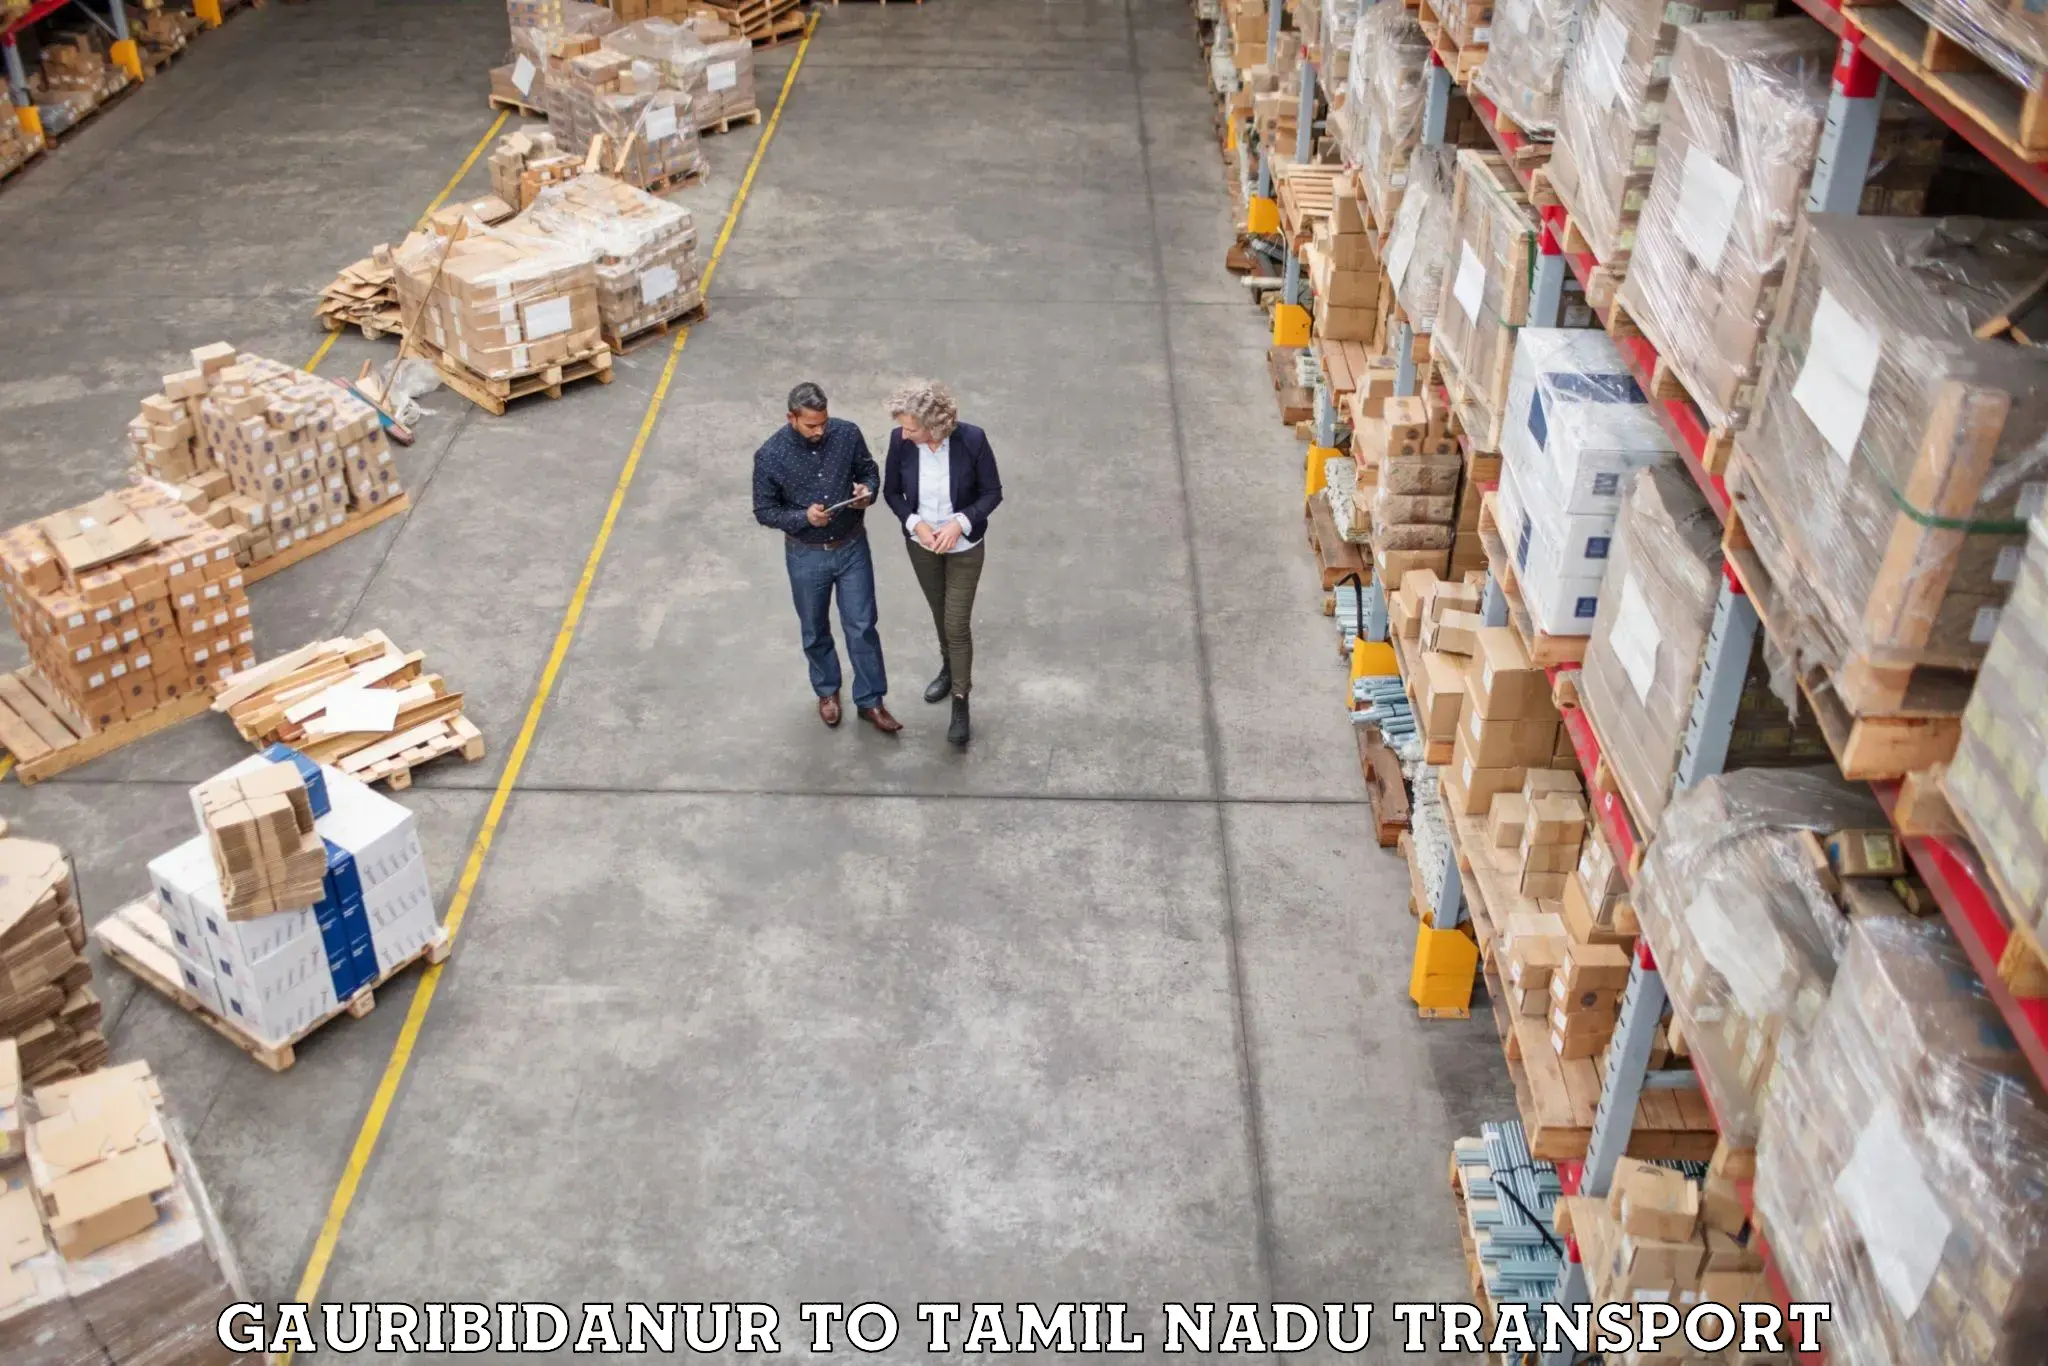 Luggage transport services Gauribidanur to IIIT Tiruchirappalli